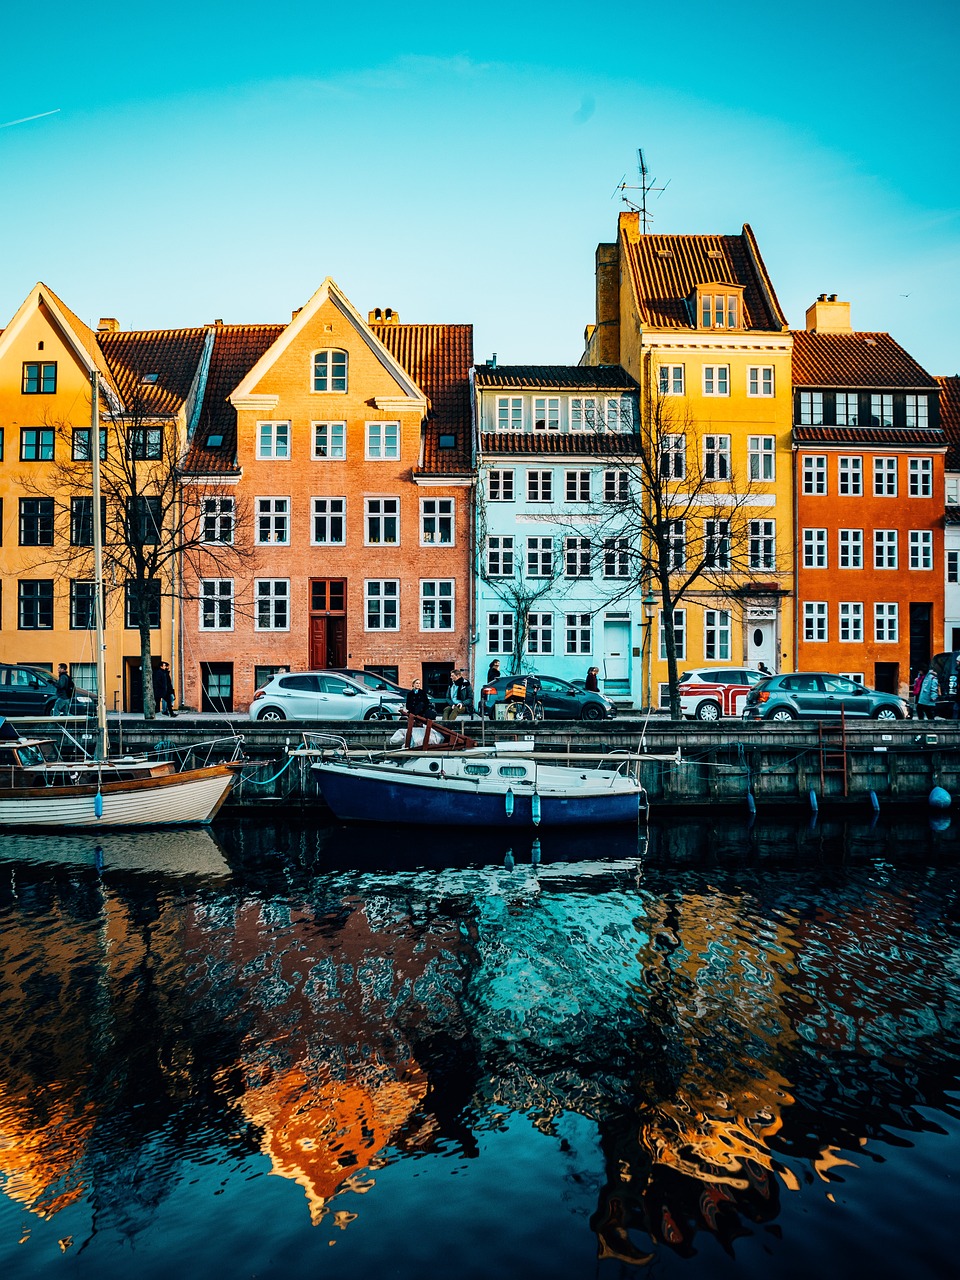 5-Day Scandinavian Adventure: Denmark, Sweden, and Norway